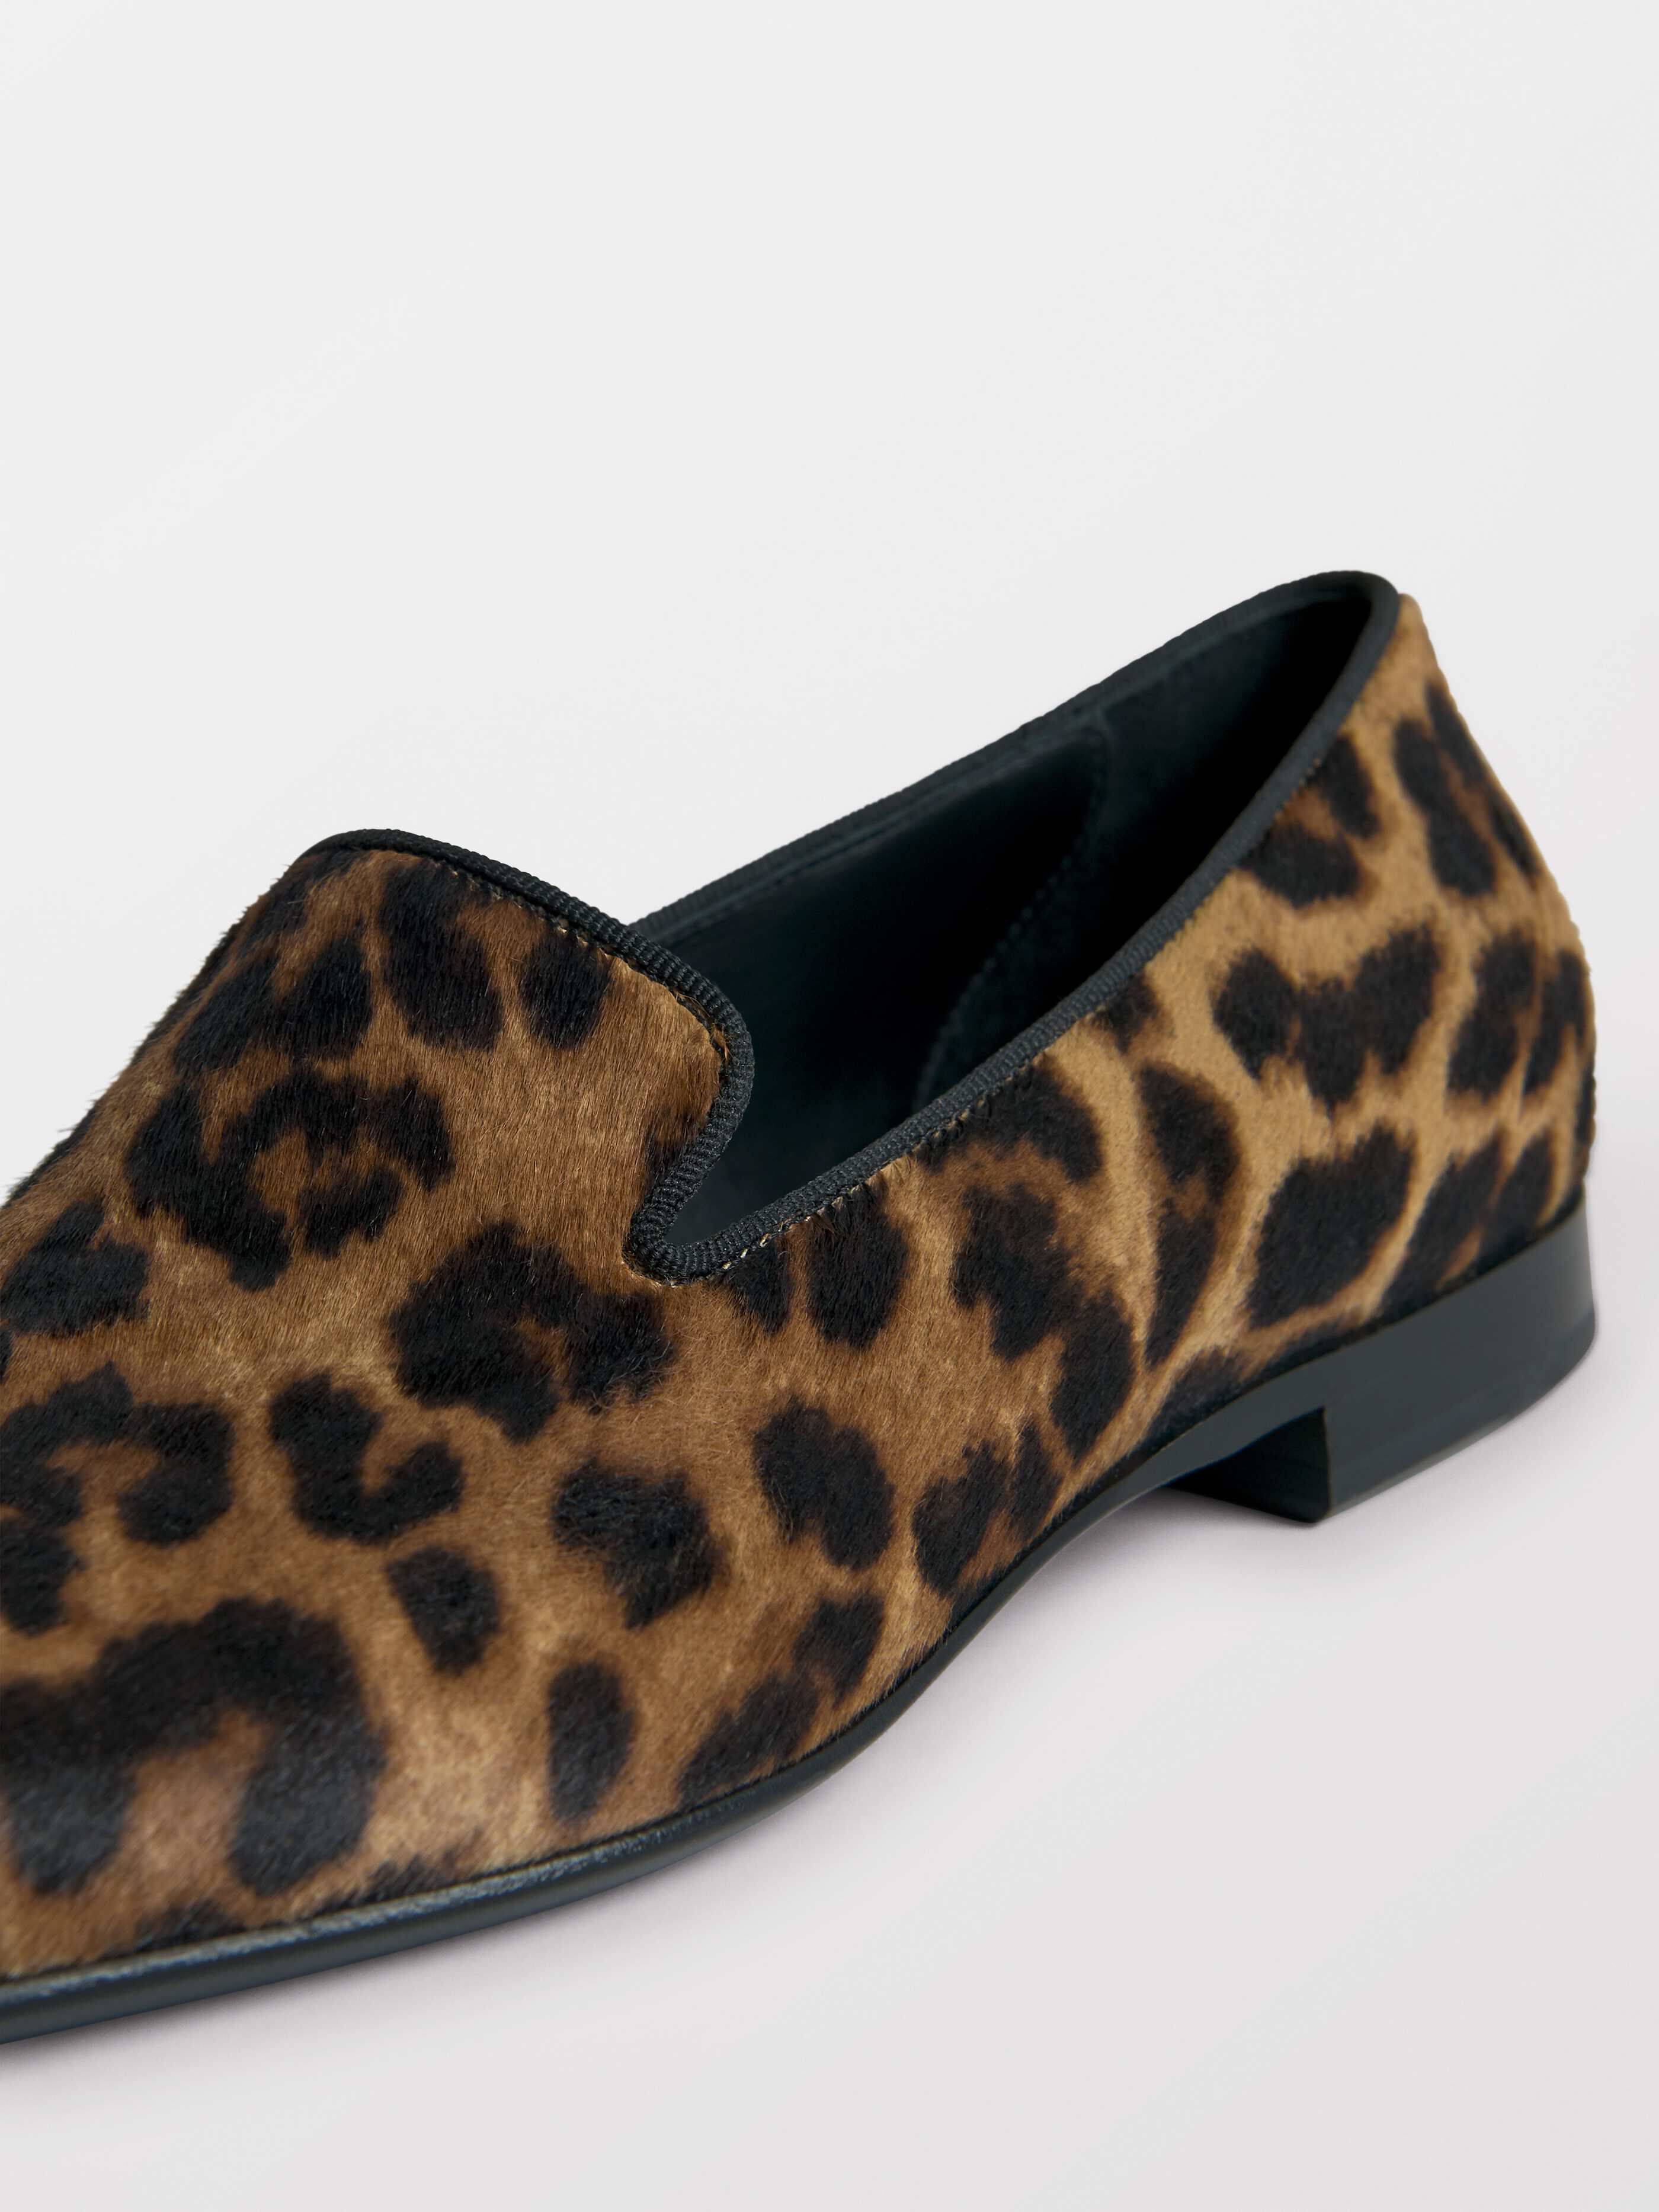 tiger loafer shoes